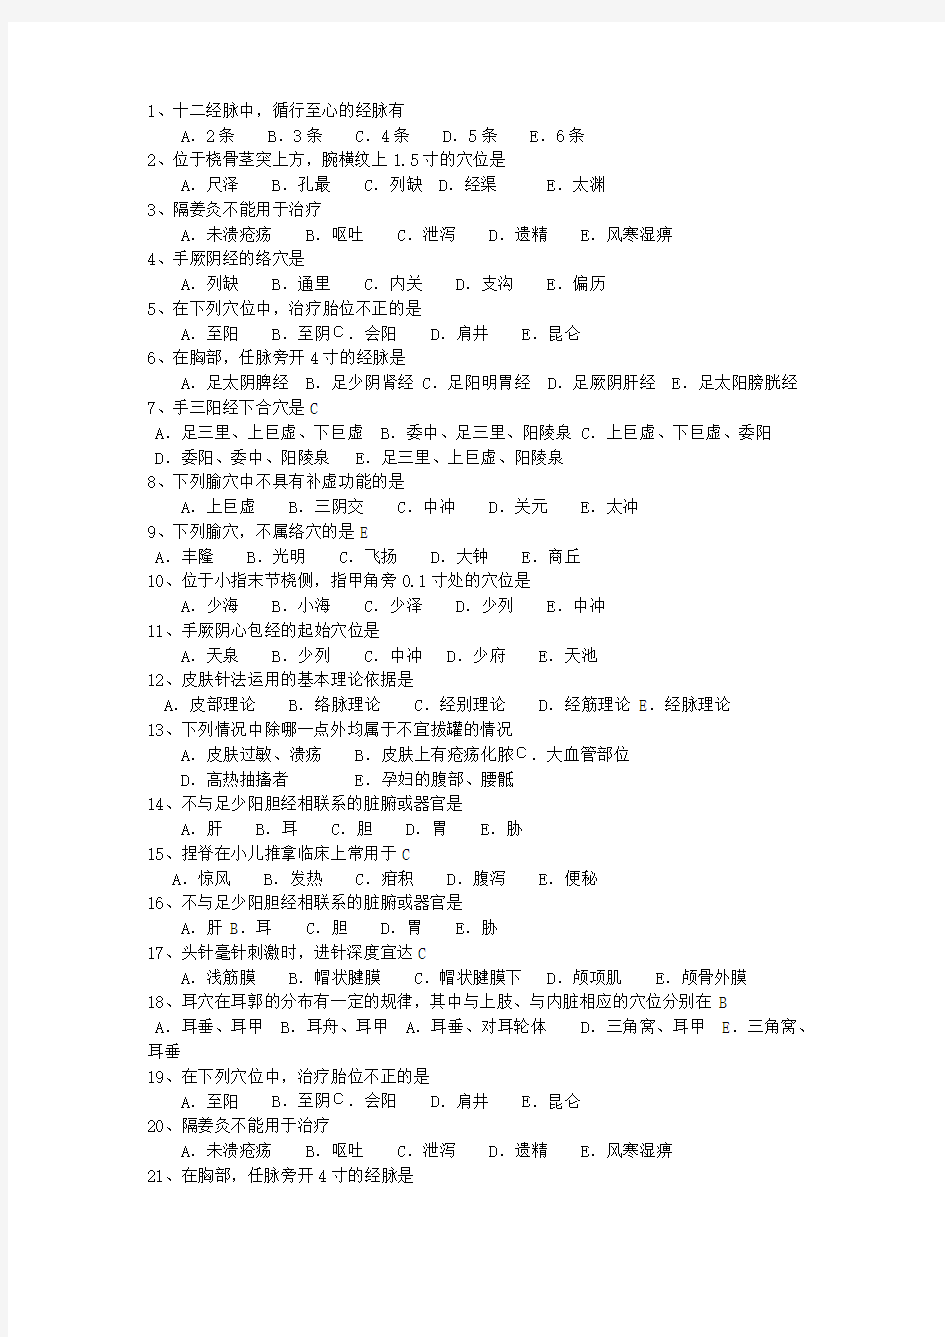 2014年湖北省针灸推拿专业考博最新考试试题库(完整版)